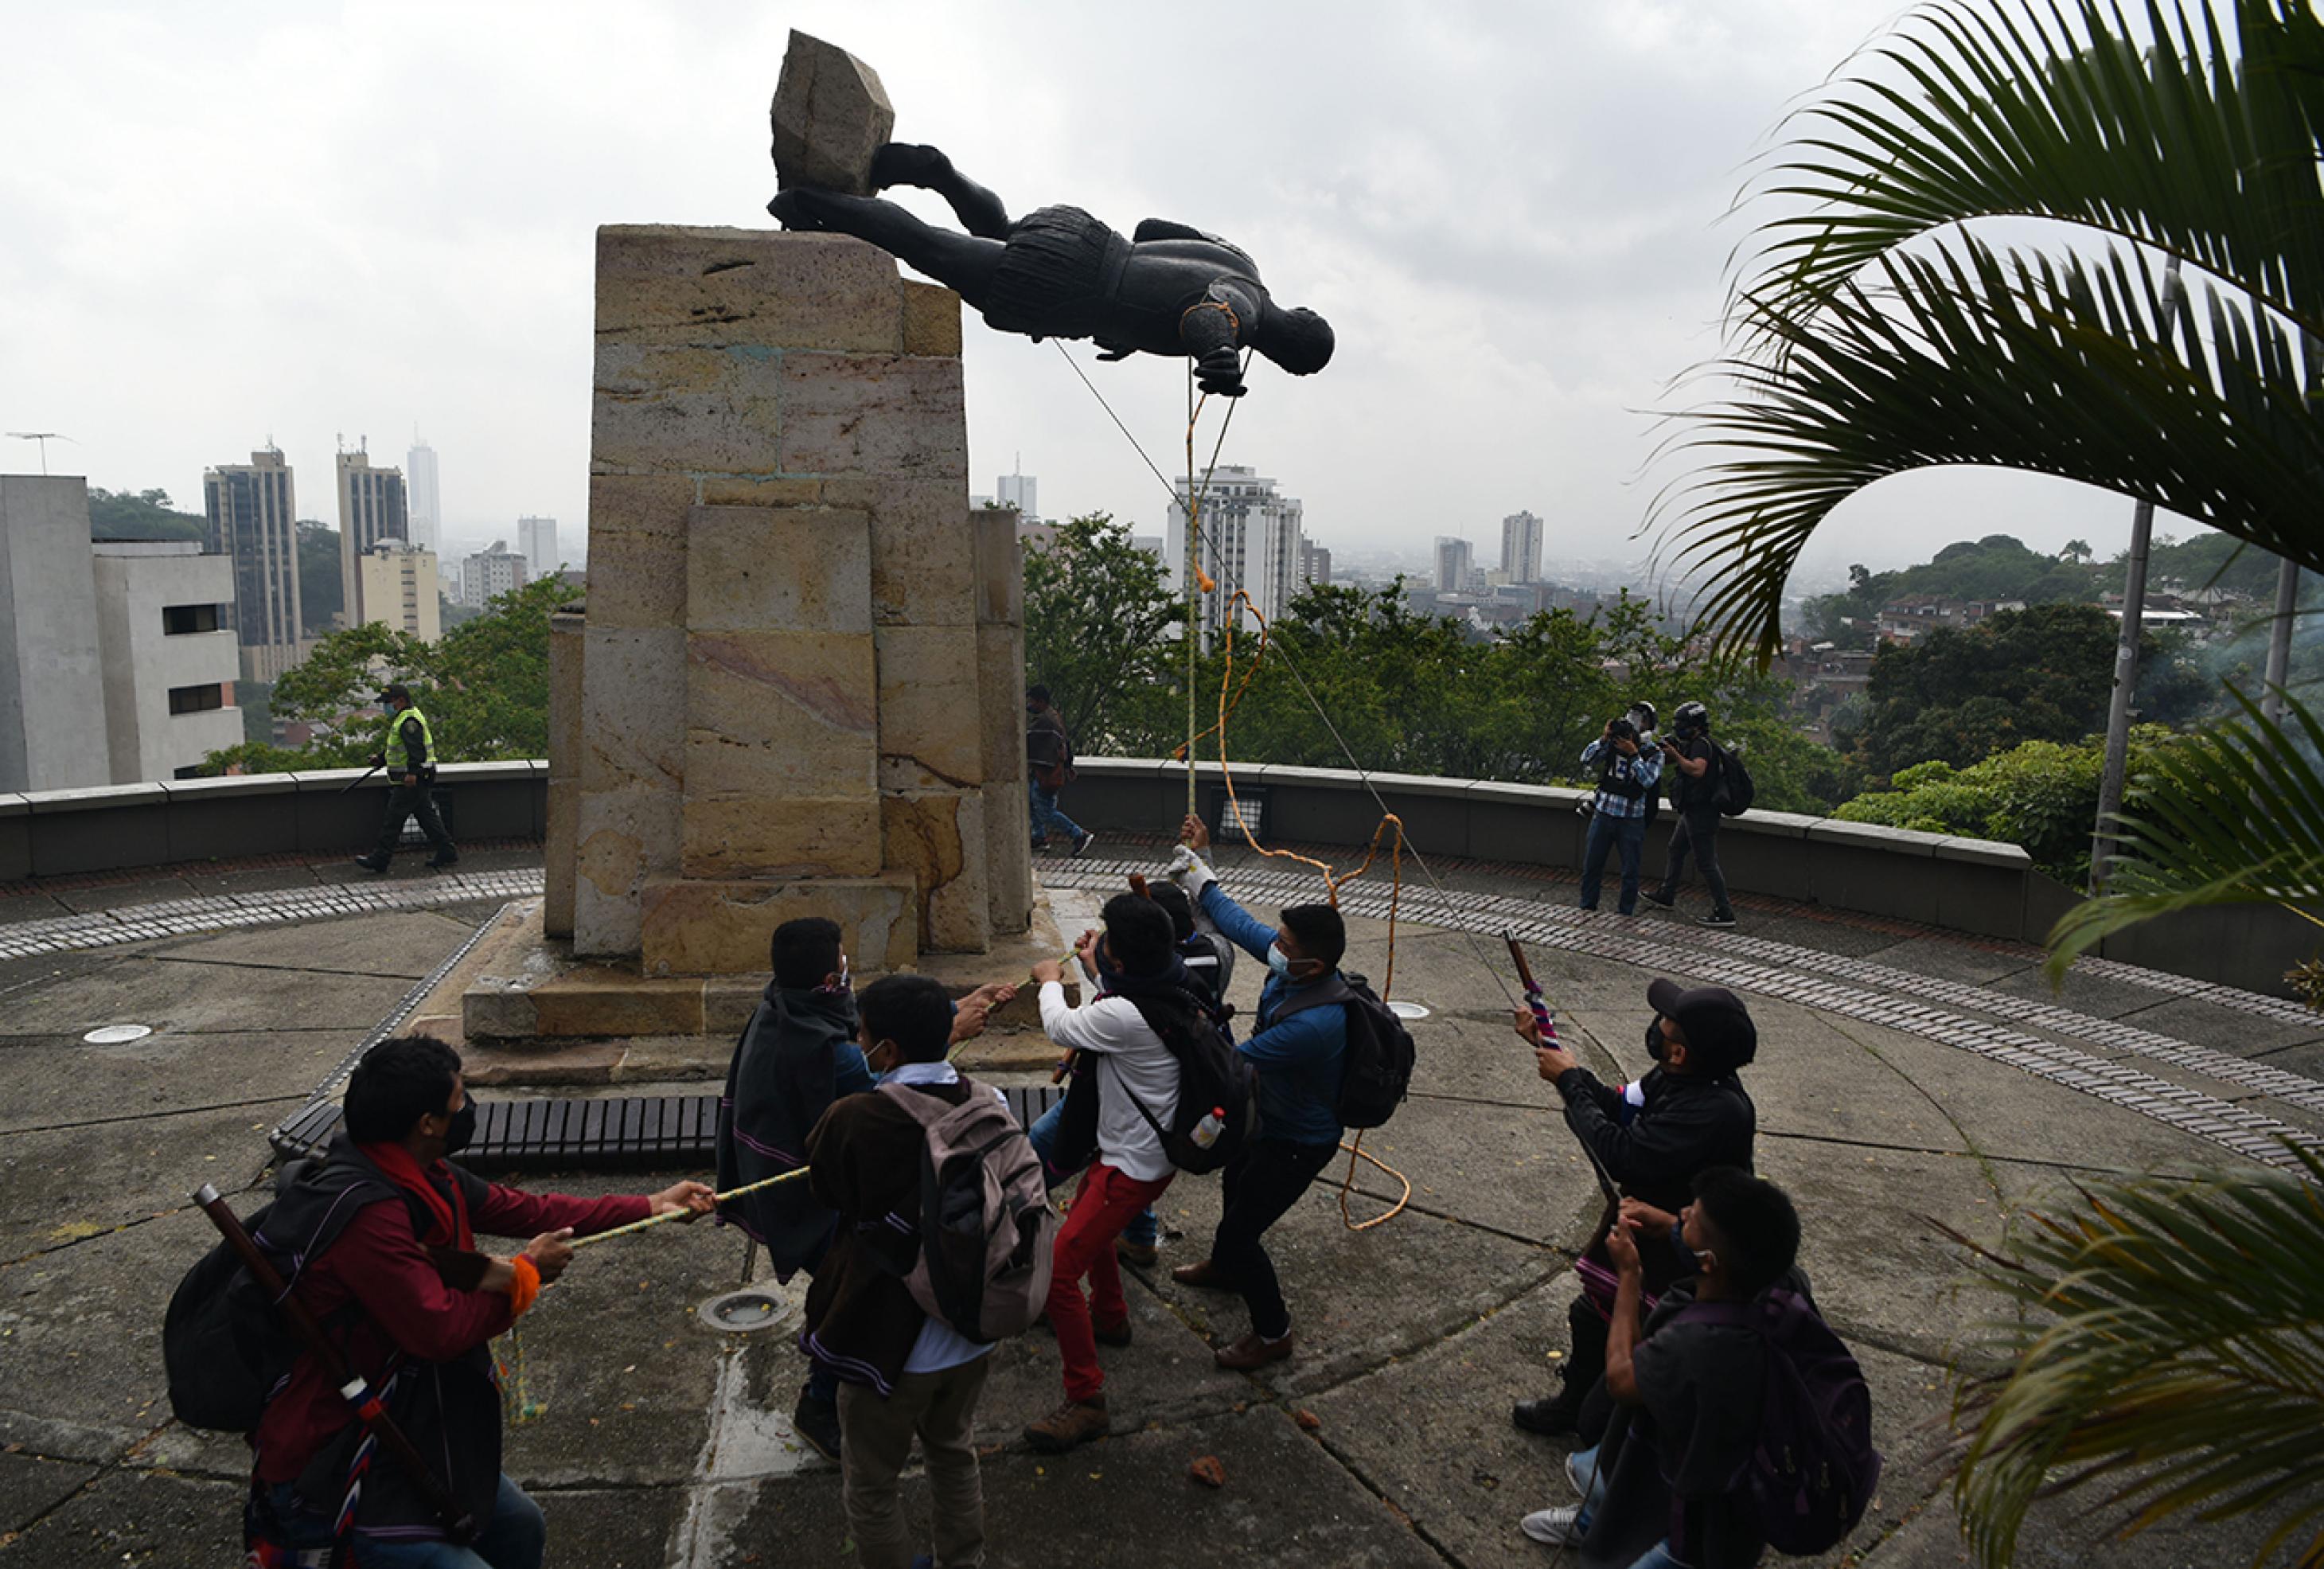 Acht Männer ziehen mit Seilen die Statue vom Sockel. Sie liegt waagerecht in der Luft. Im Hintergrund zwei filmende Männer und ein Polizist mit Schlagstock.